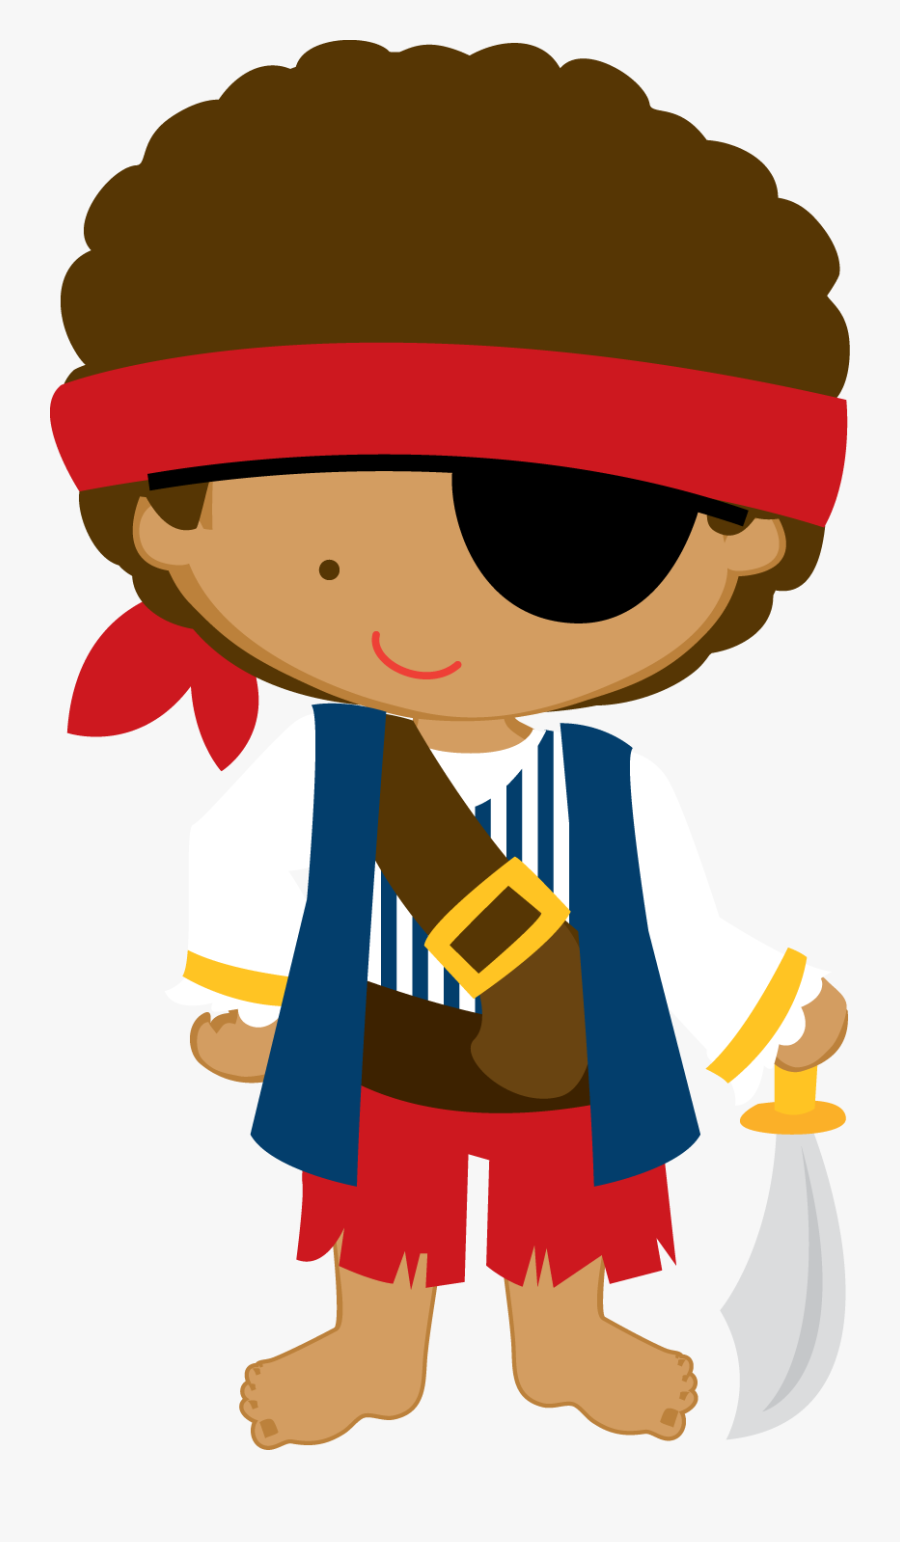 Pirate Clip Art, Pirate Party, Pirate Kids, Pirate - Pirate Kids Clipart, Transparent Clipart